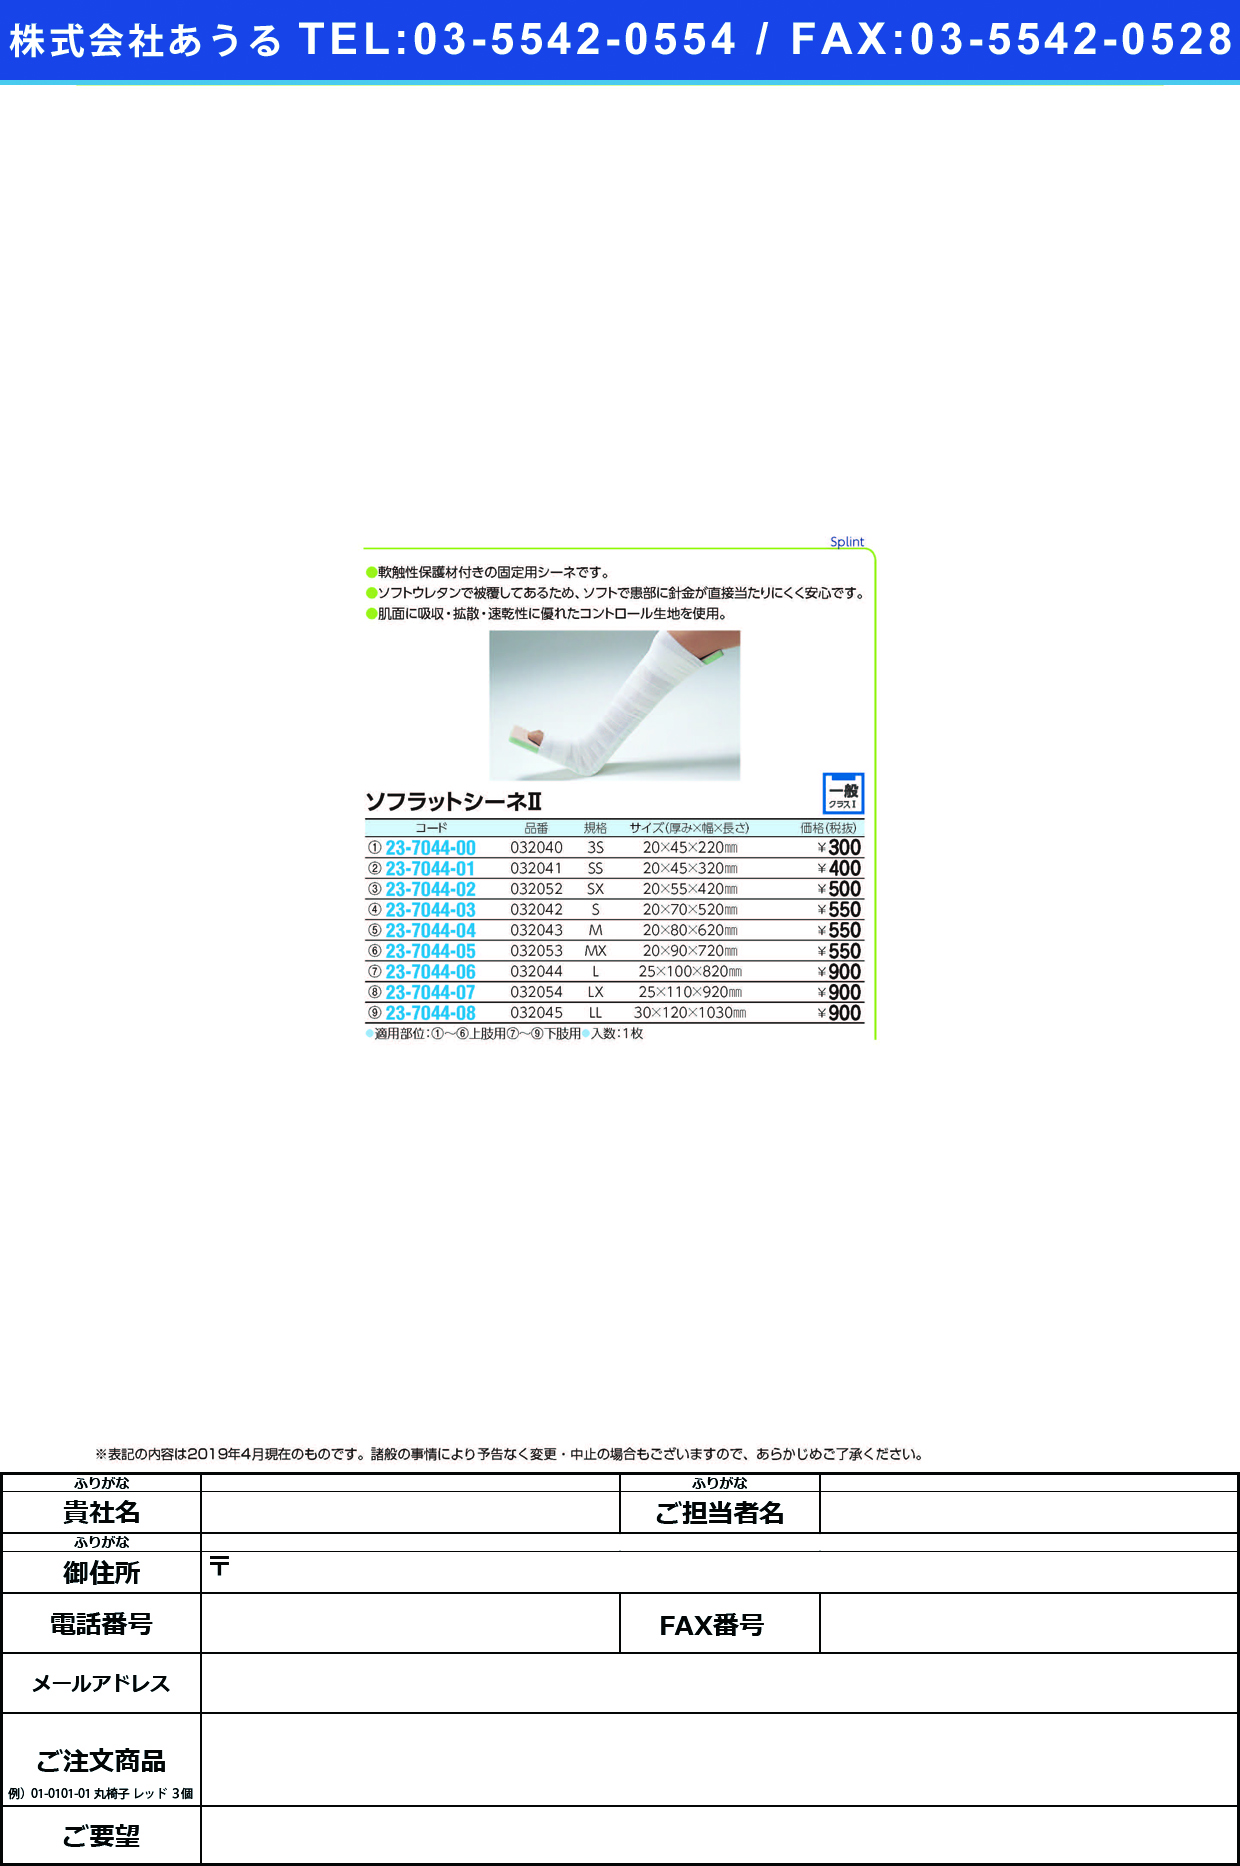 (23-7044-07)ソフラットシーネⅡ（ＬＸ） 032054 ｿﾌﾗｯﾄｼｰﾈ2(LX)(竹虎)【1枚単位】【2019年カタログ商品】